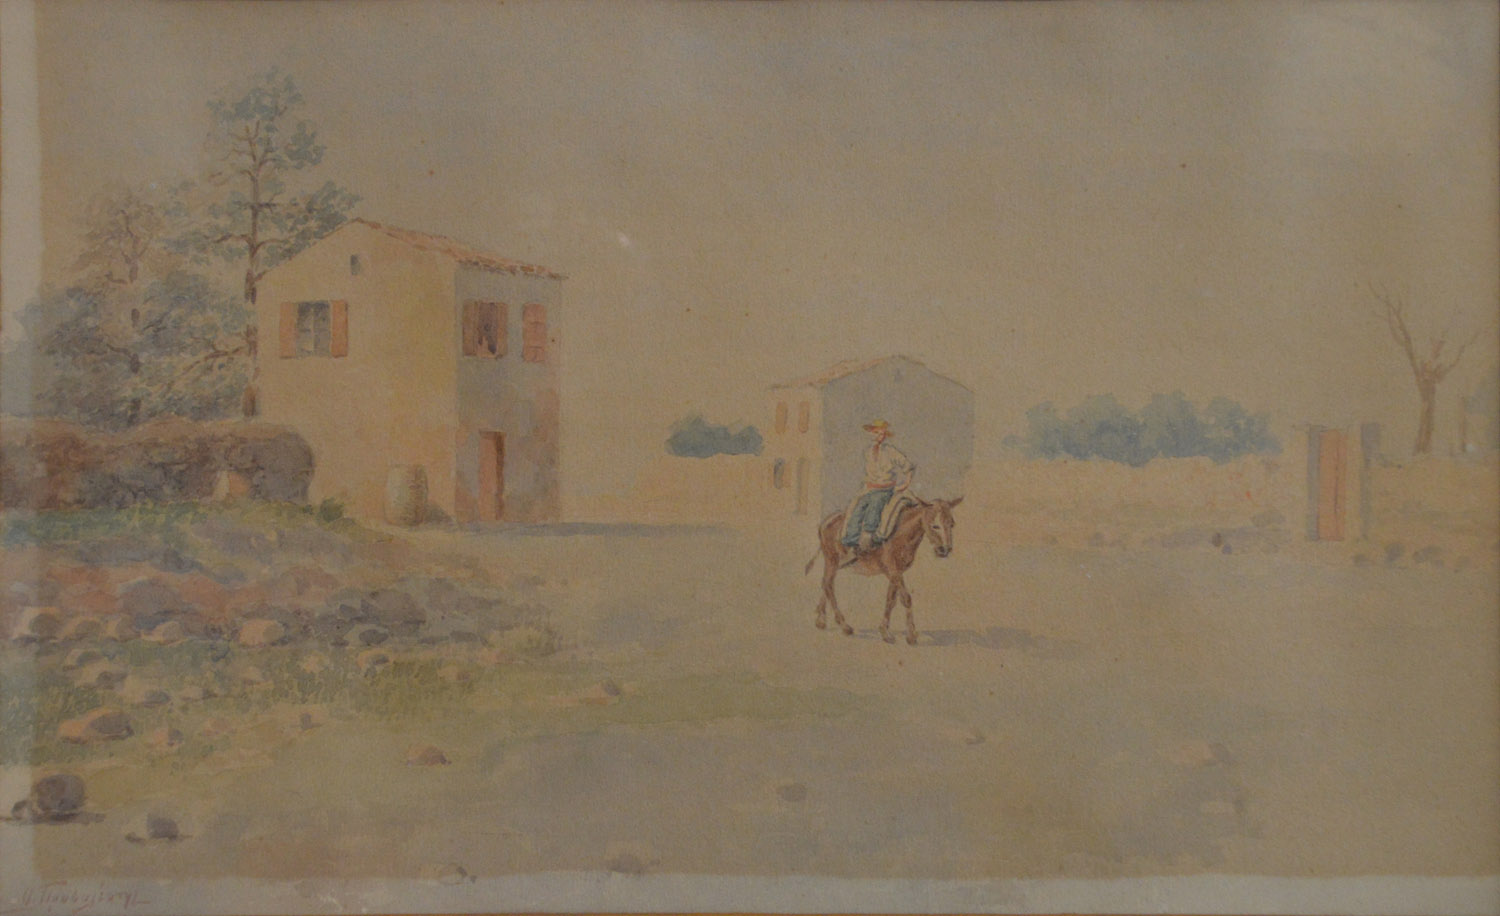 ΠΡΟΣΑΛΕΝΤΗΣ, Αἰμίλιος, 1859-1926.